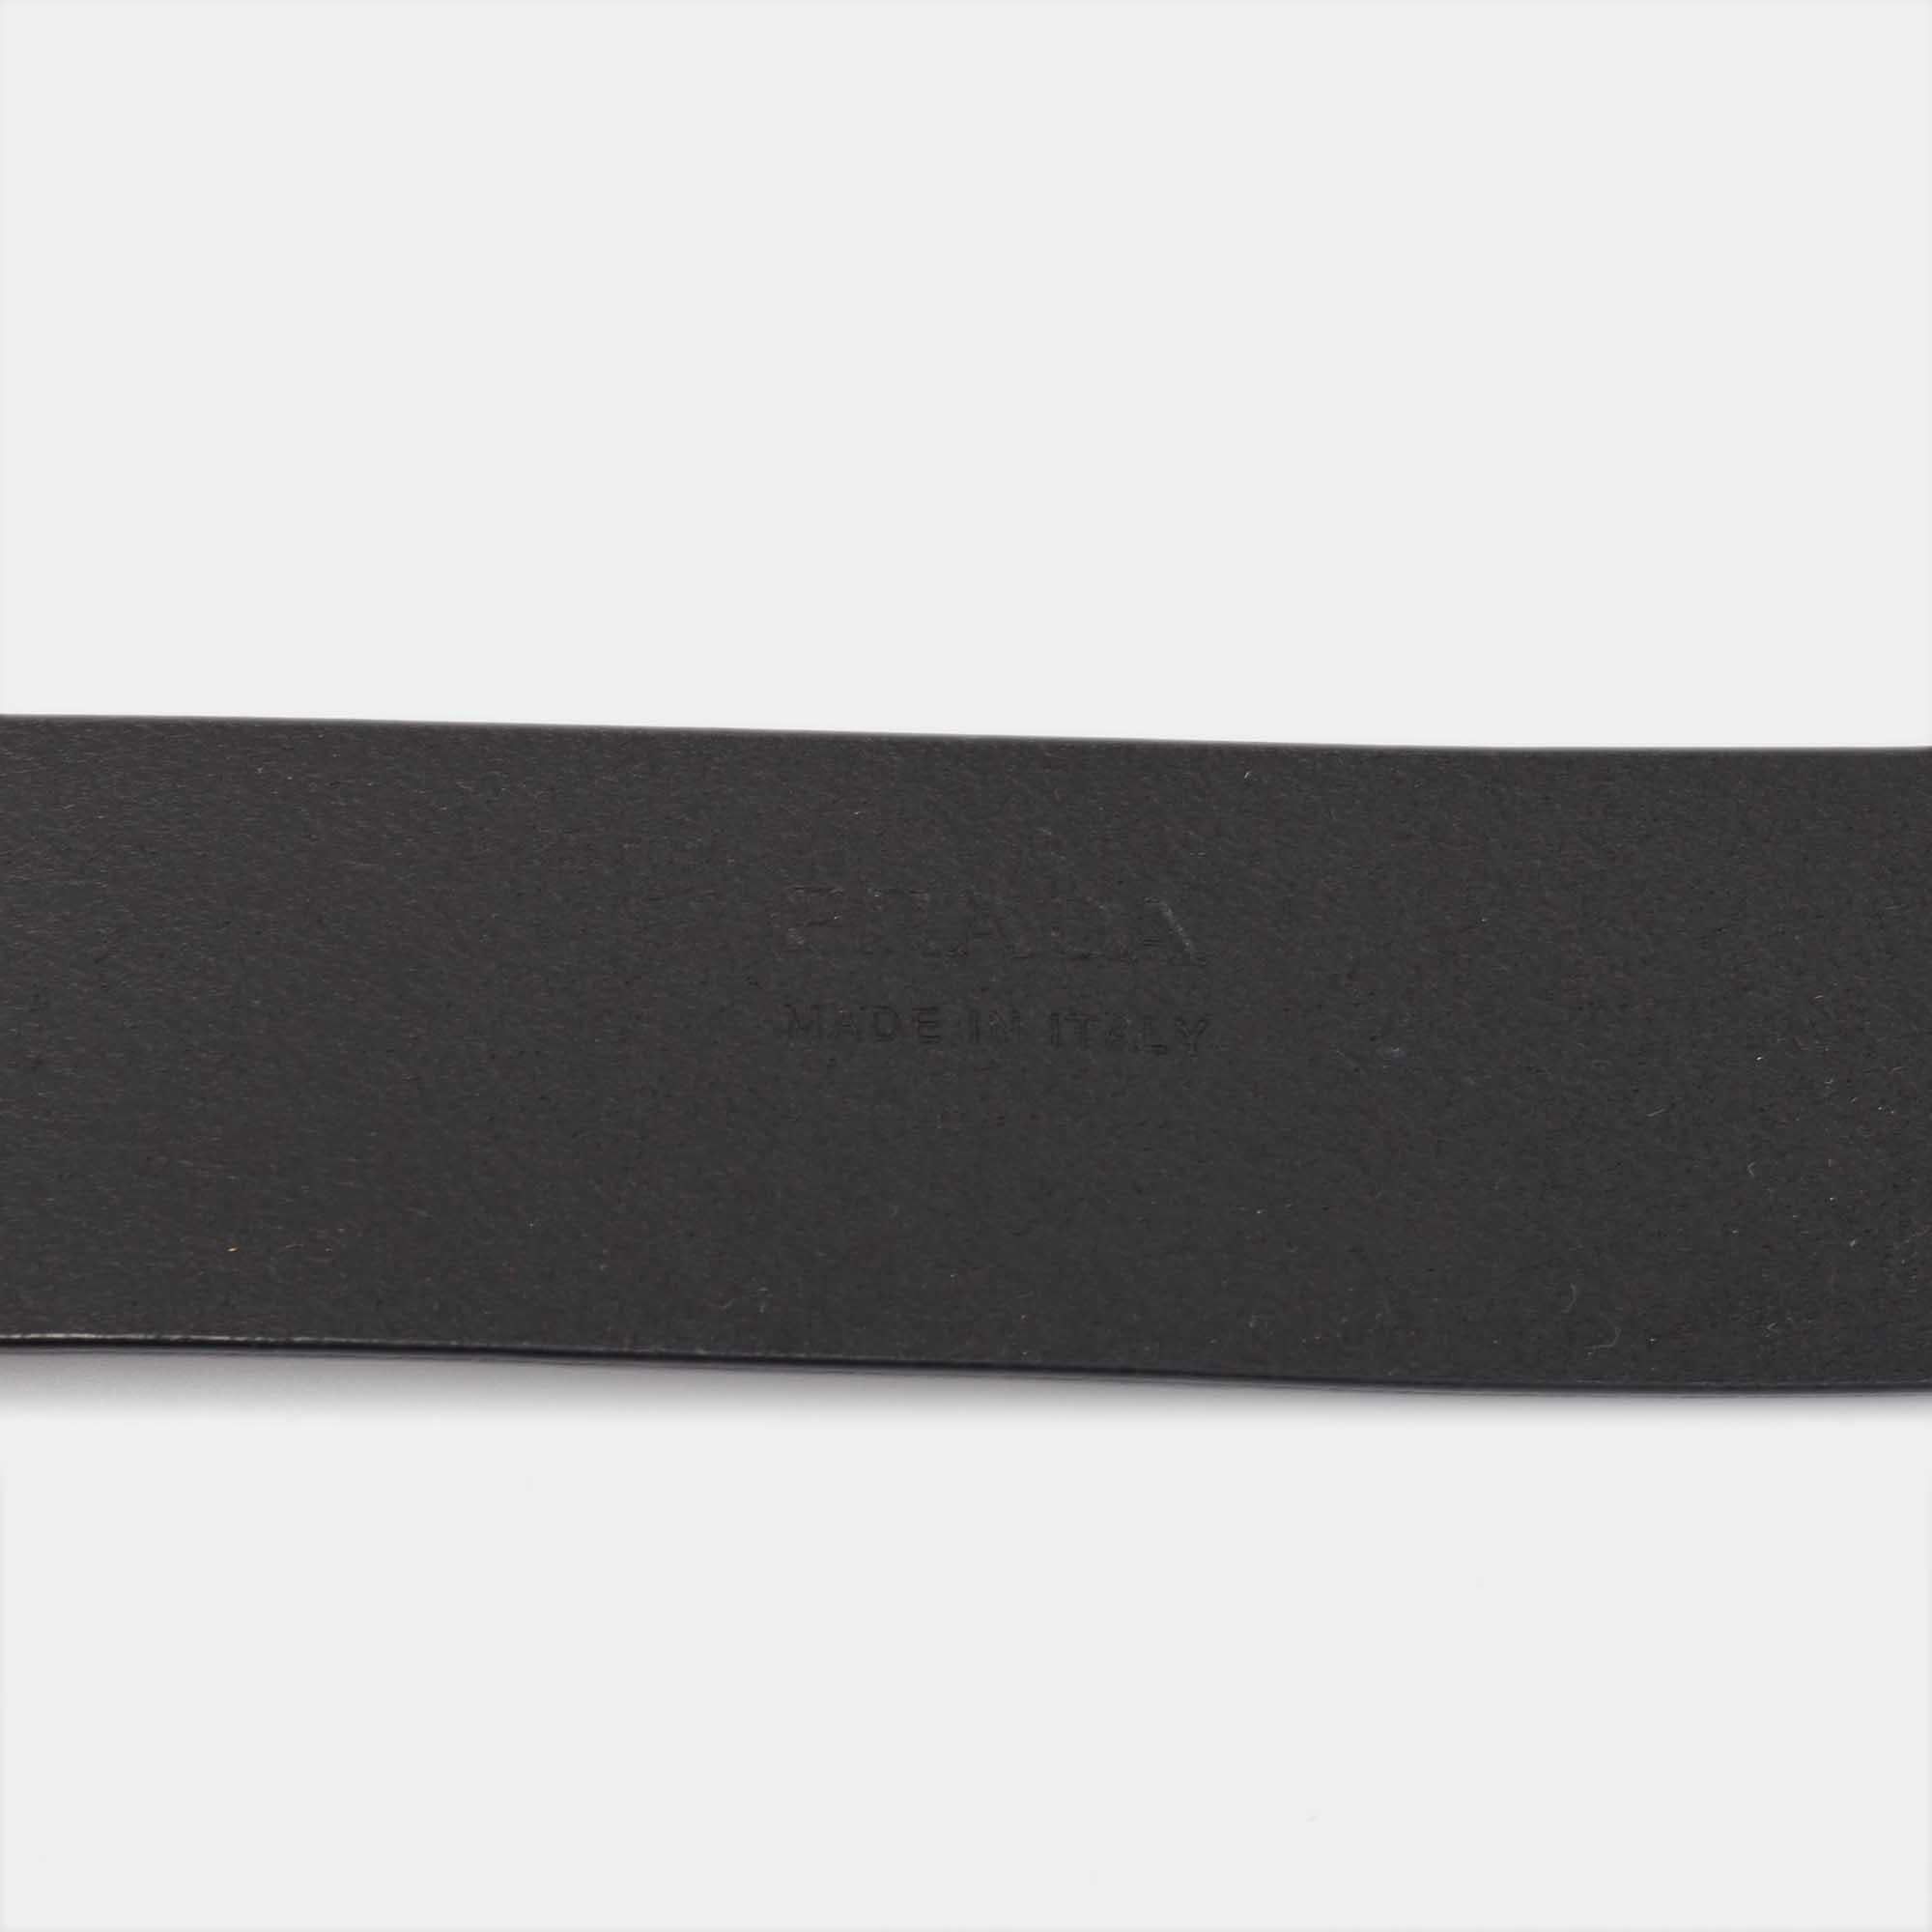 Nous vous présentons une ceinture Prada qui a été conçue pour être durable et pour s'adapter à tous vos looks raffinés. D'une grande durabilité et d'un grand attrait, cette ceinture est un élément de luxe.

